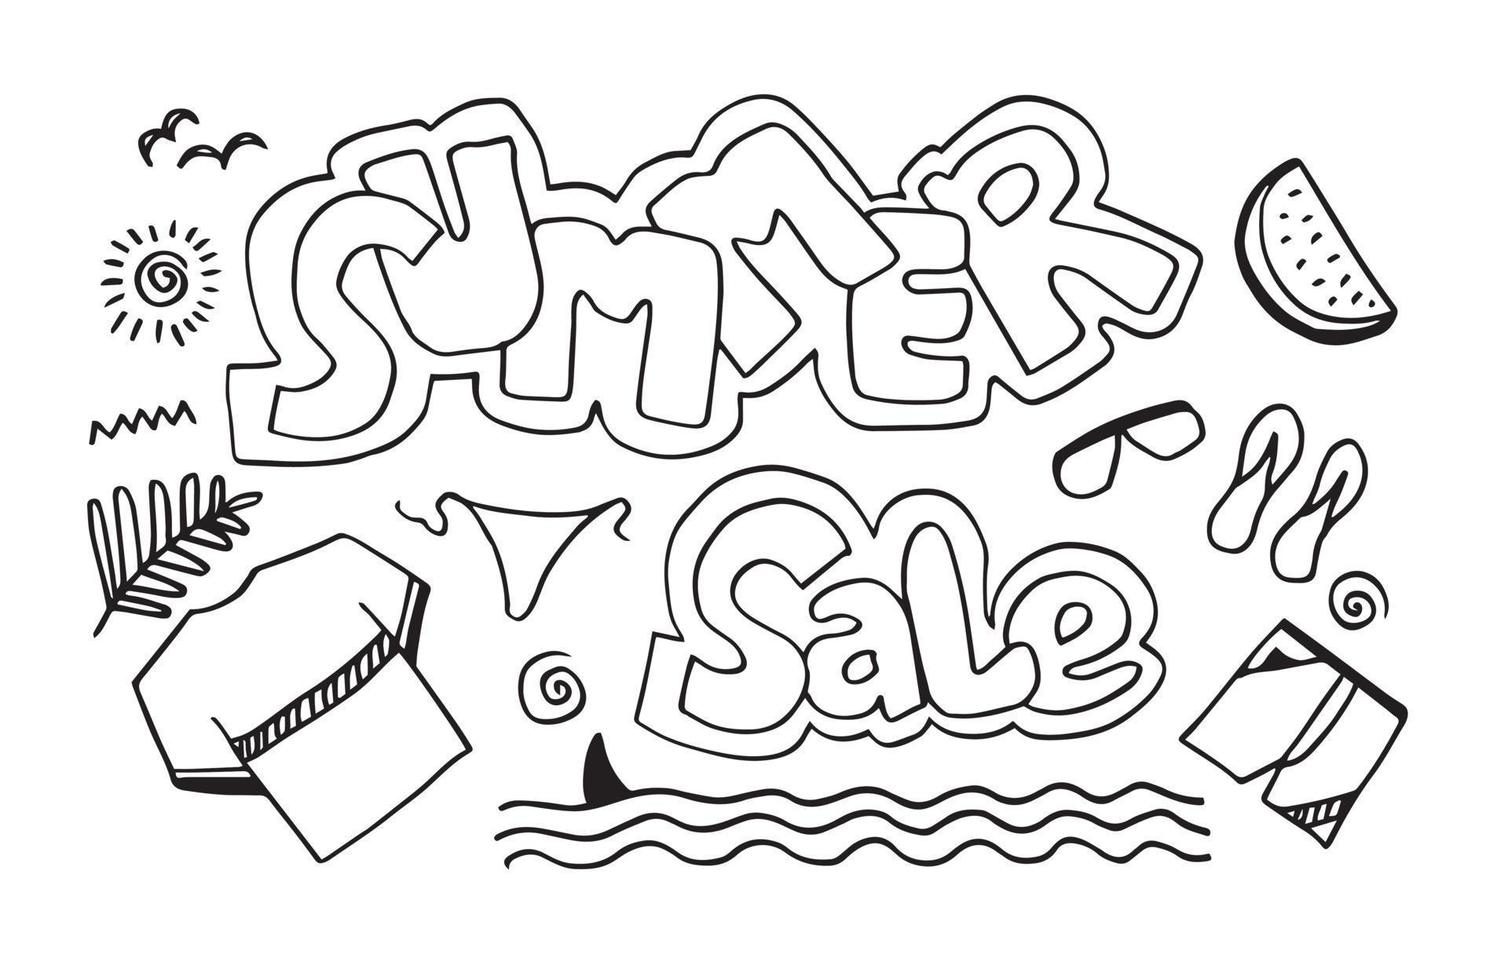 sommarrea handskriven med vattenmelonskivor, t-shirt, sandaler, shorts och löv. dekorativ illustration för banner, print, affisch. vektor